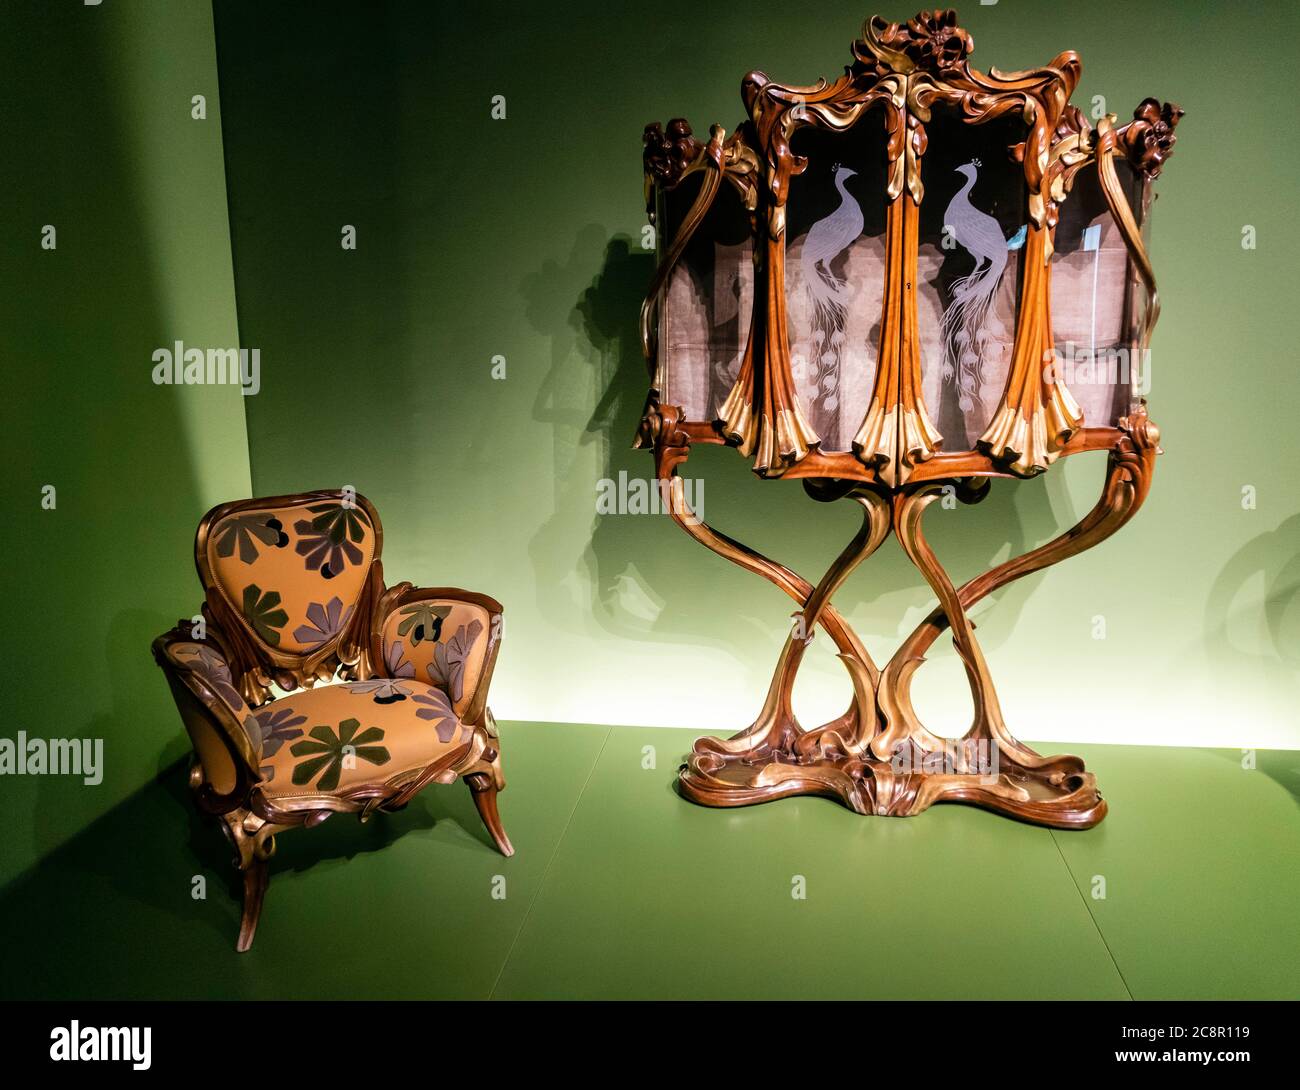 ALEIX Clapes (Vilasar de Dalt 1846-Barcelona 1920), mobilier moderniste (1898-1902), fauteuil, vitrine en verre, bois sculpté et doré, et textiles. Banque D'Images